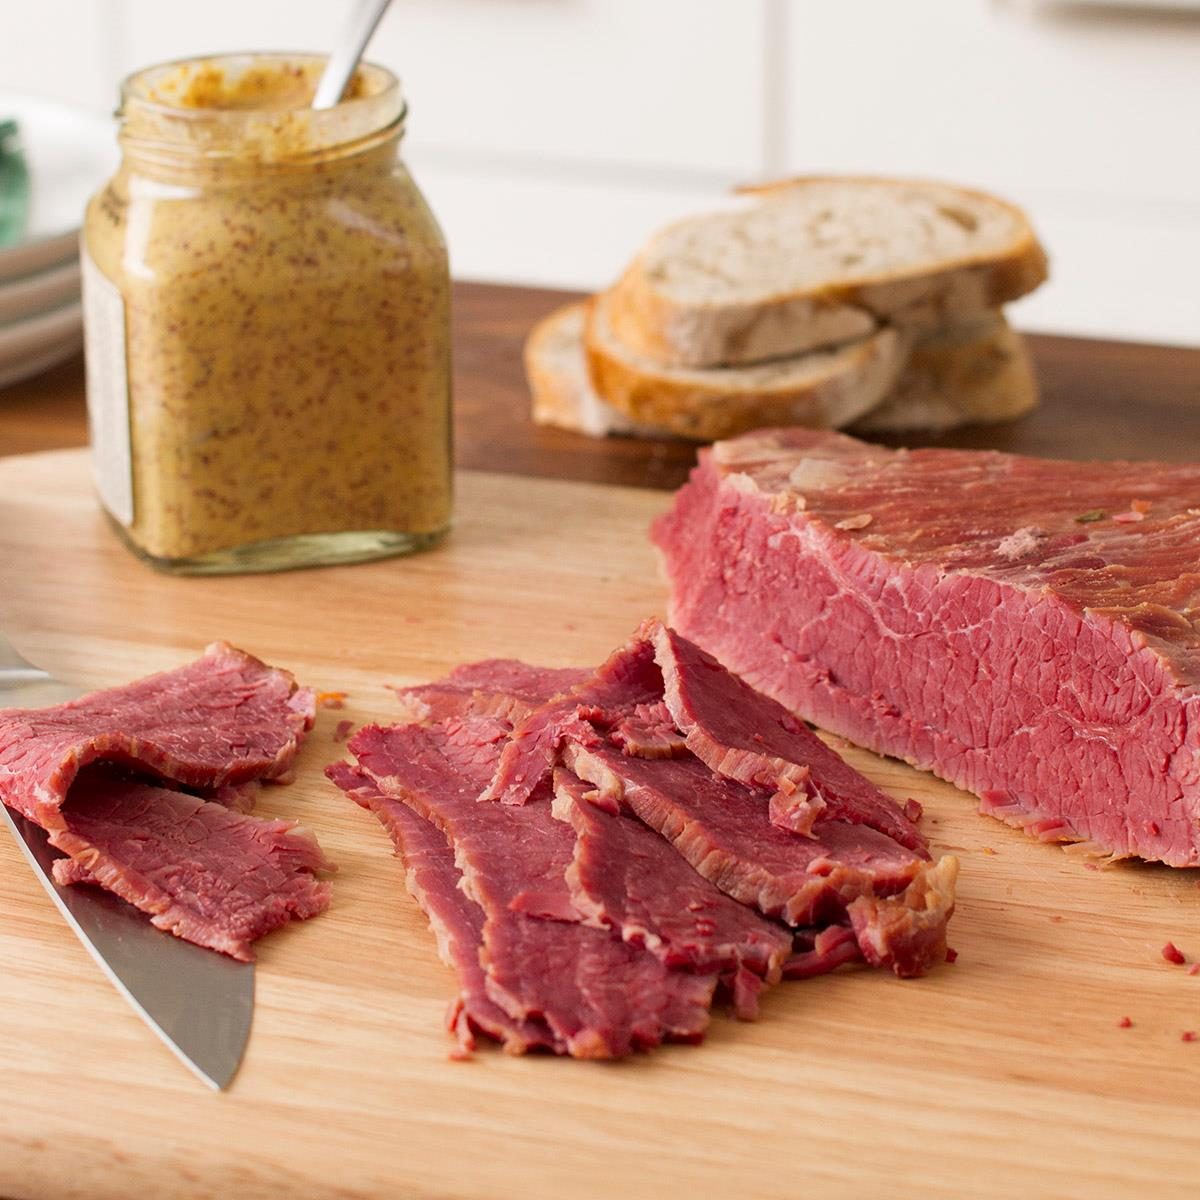 切菜板上的一片腌牛腩。背景是一罐芥末和黑麦面包。